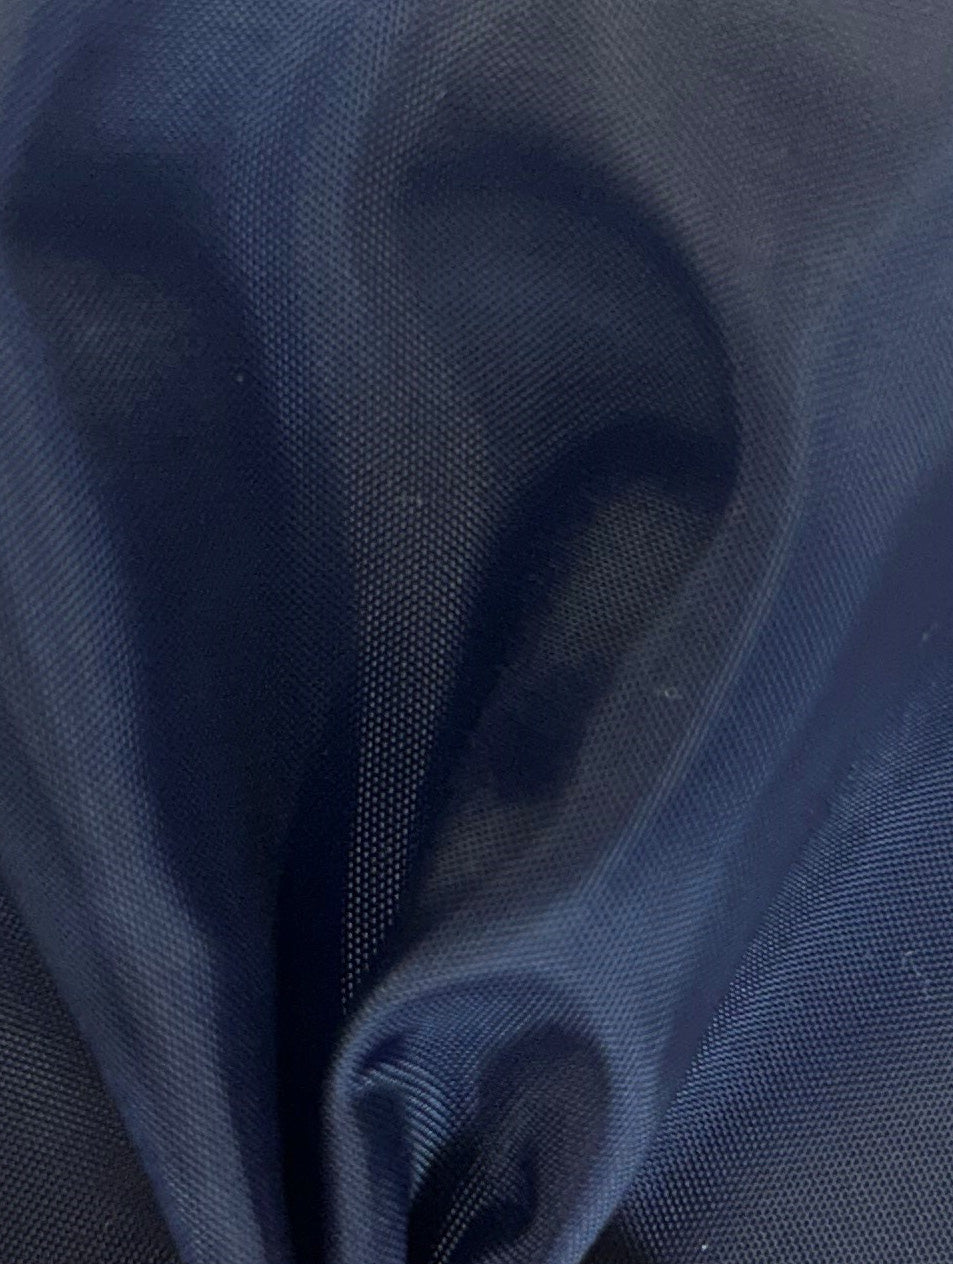 Marineblauer Polyester-Futterstoff – Eclipse